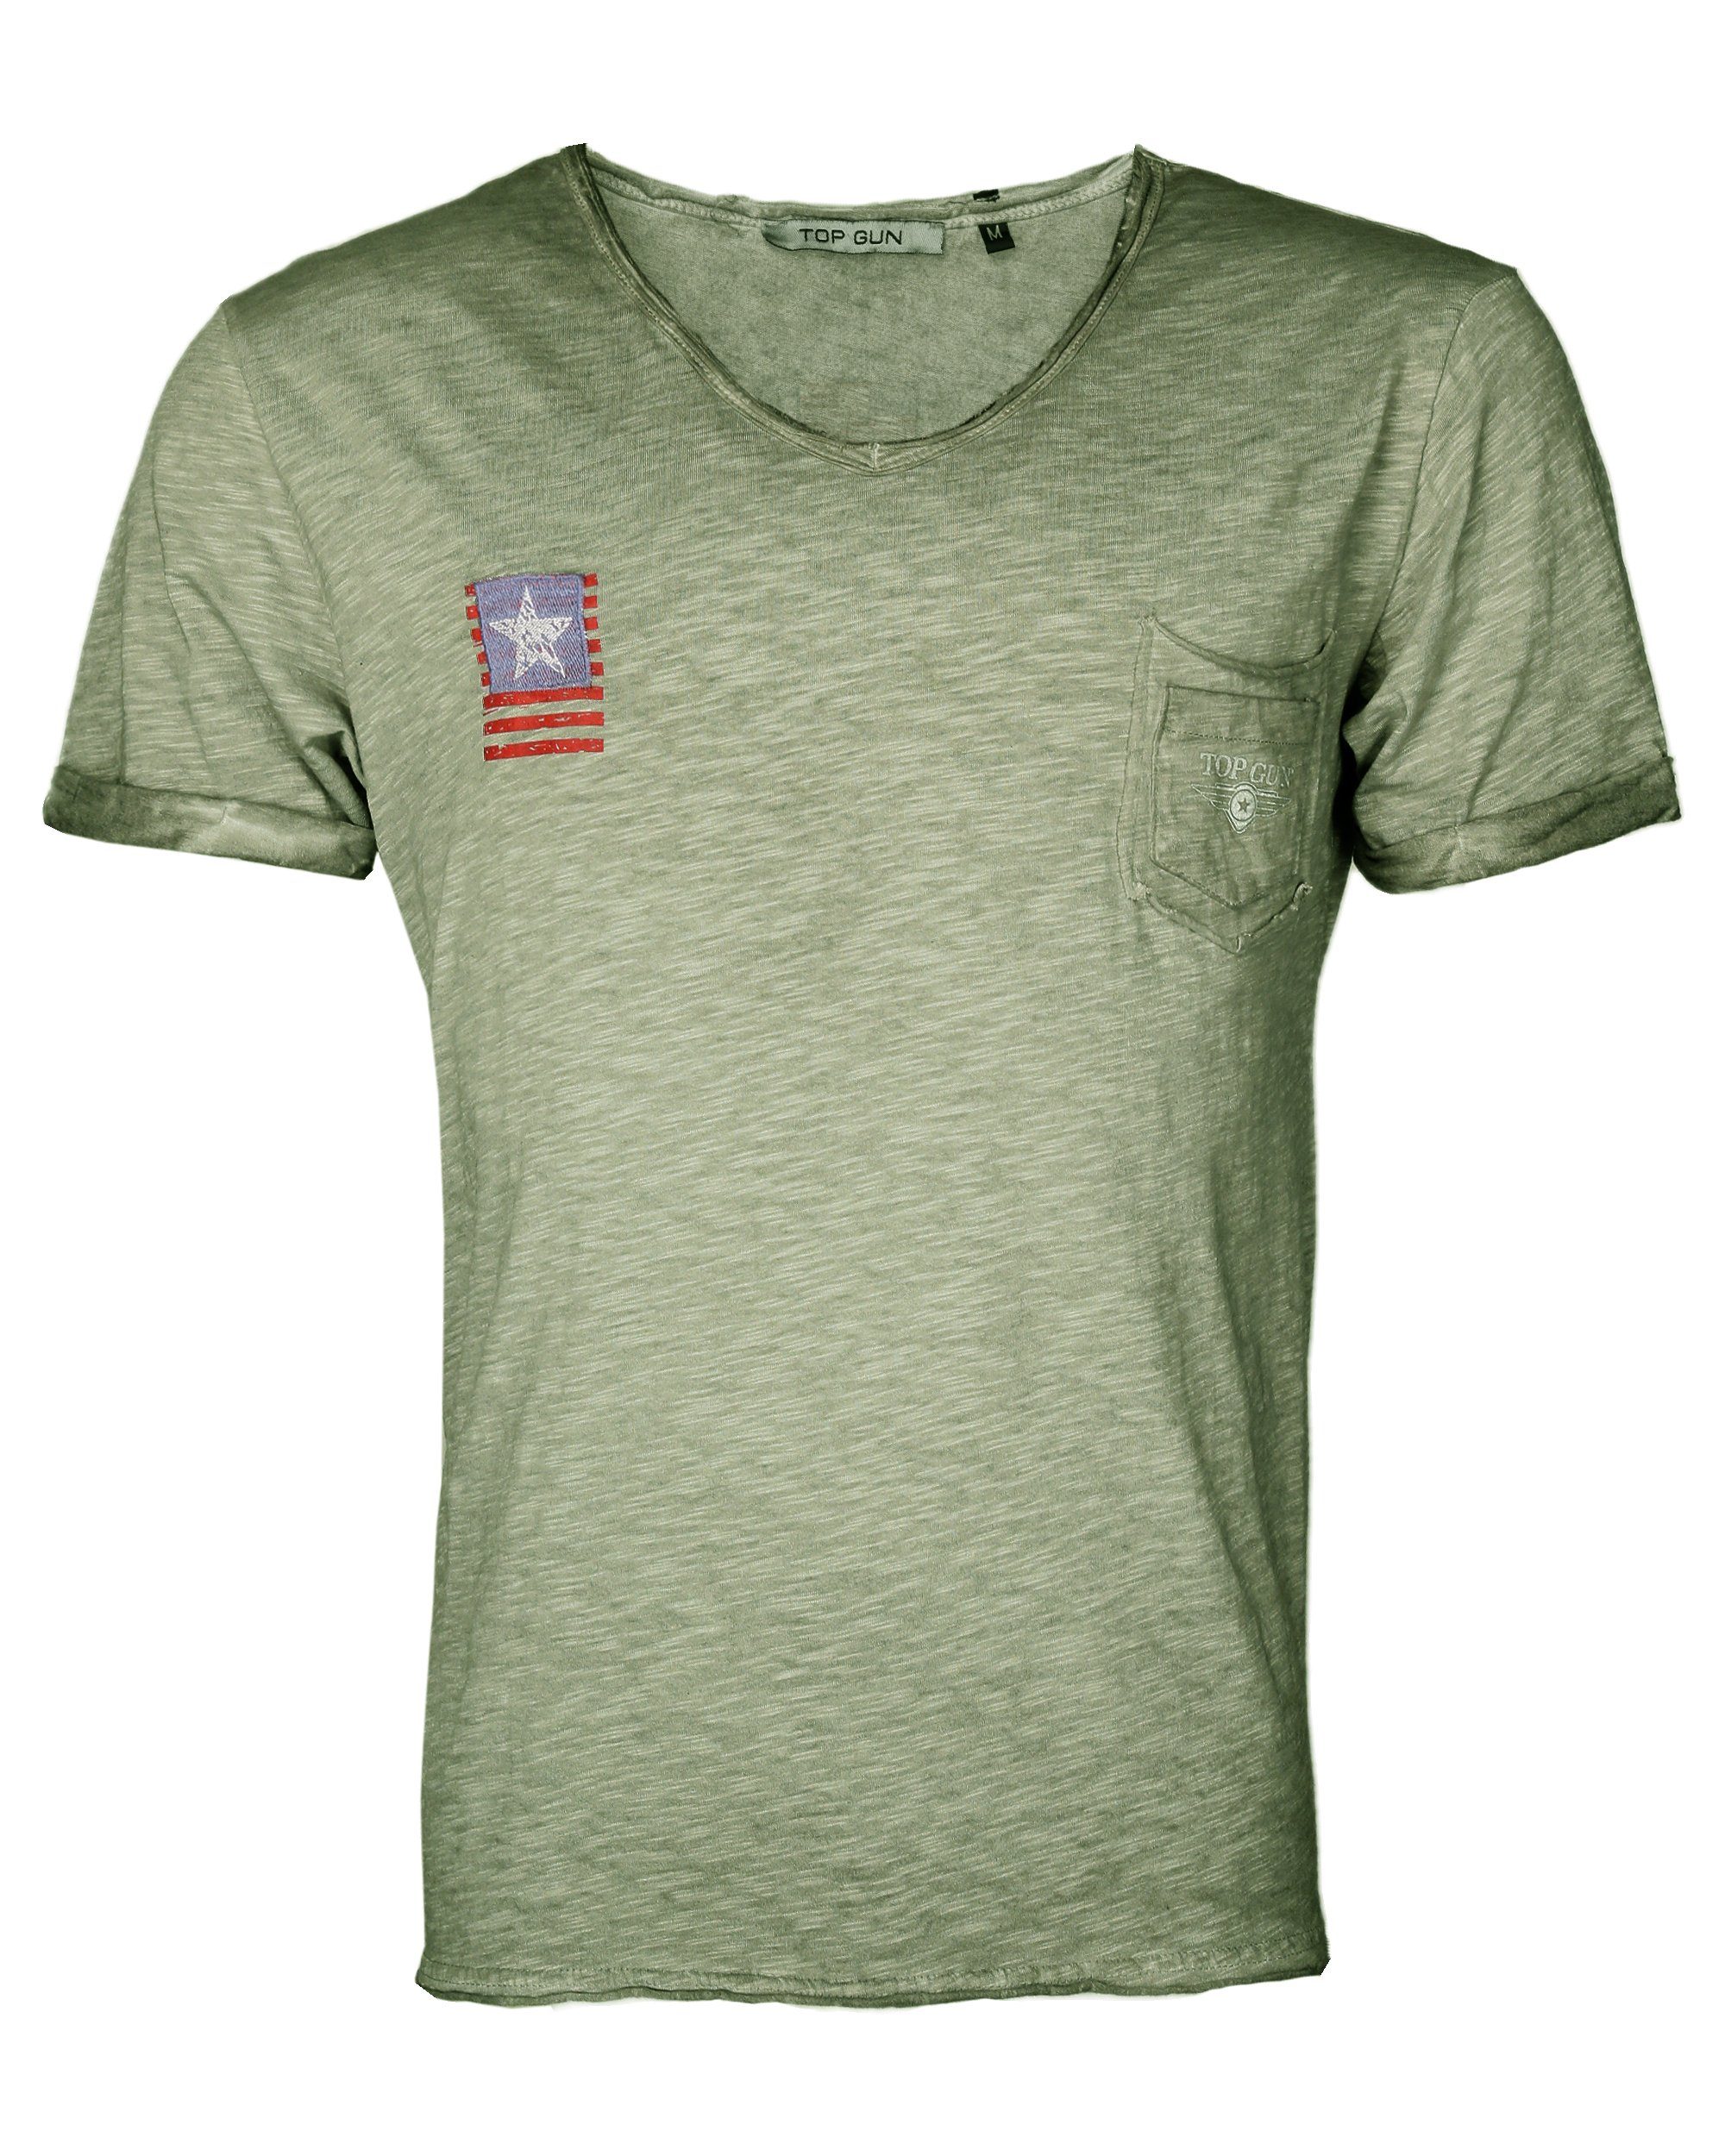 TOP GUN T-Shirt TG20193157 green